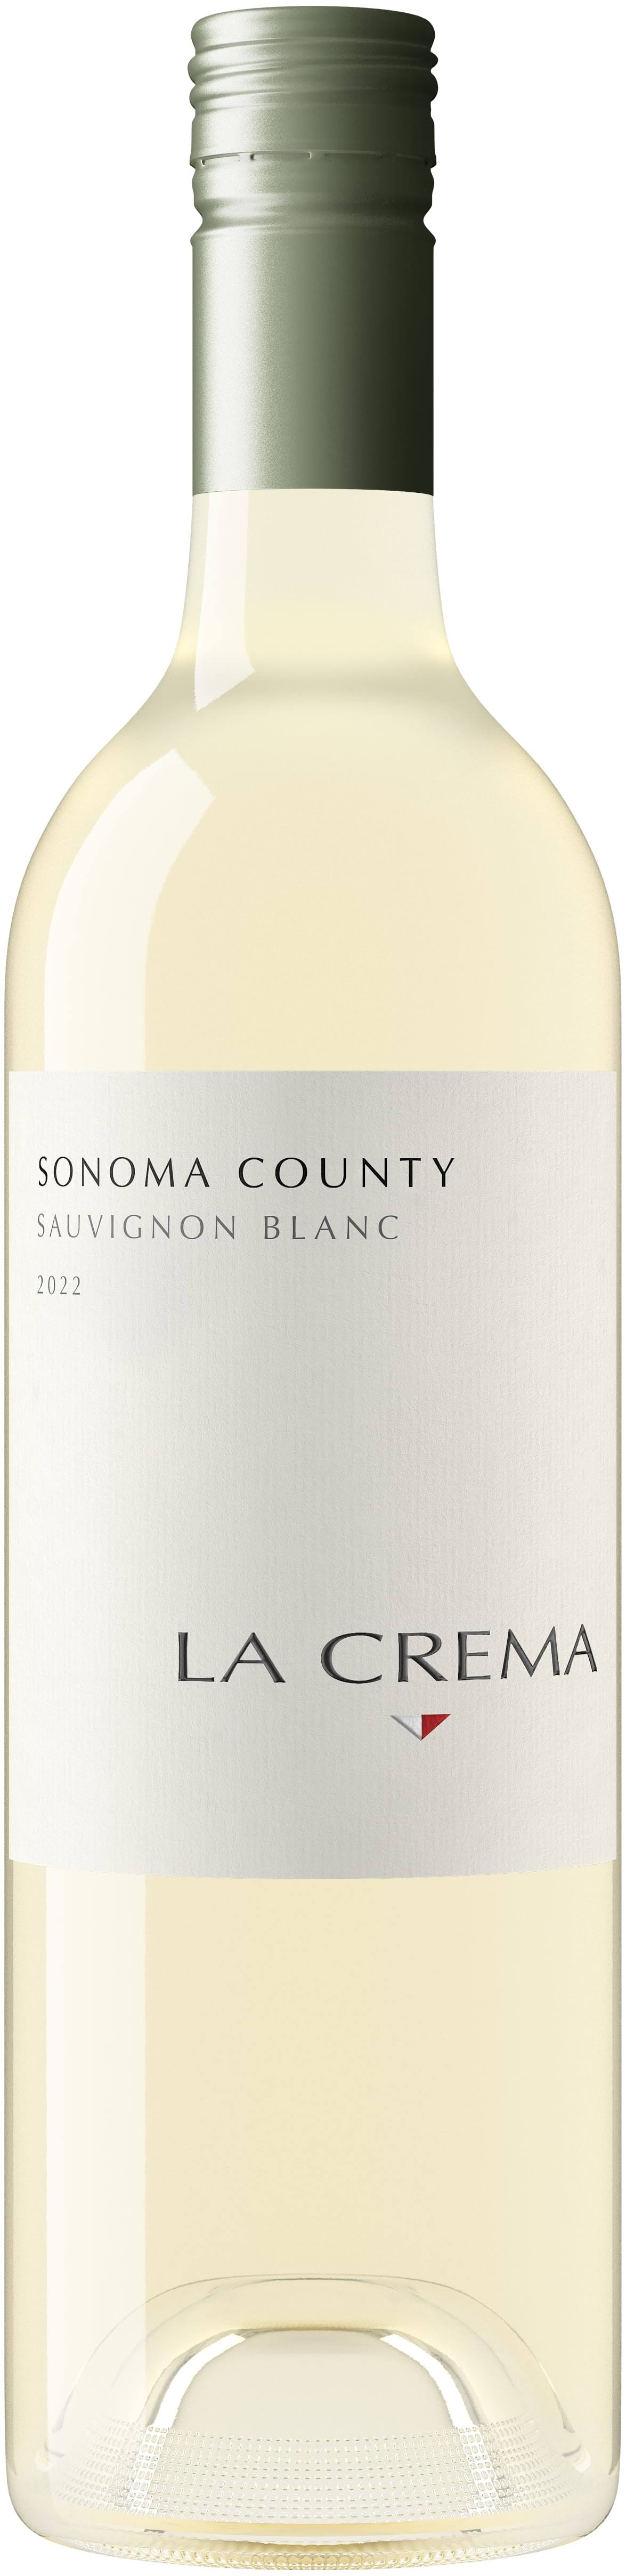 La Crema Sauvignon Blanc, Sonoma County - 750 ml